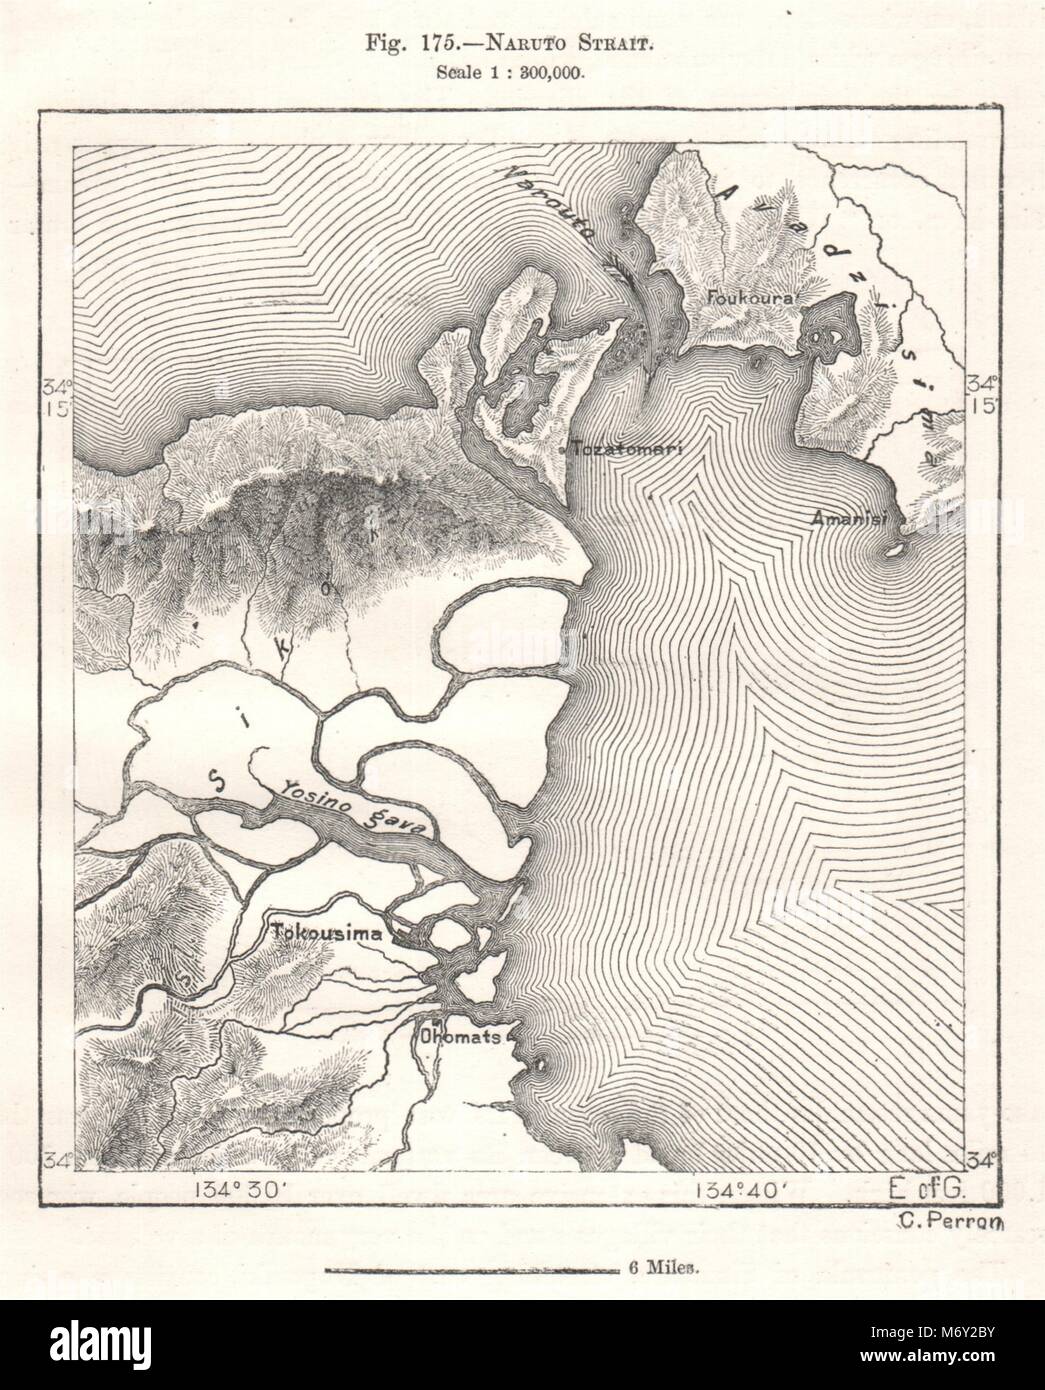 Naruto Strait. Awaji Island. Shikoku. Japan. Tokushima. Sketch map 1885 Stock Photo